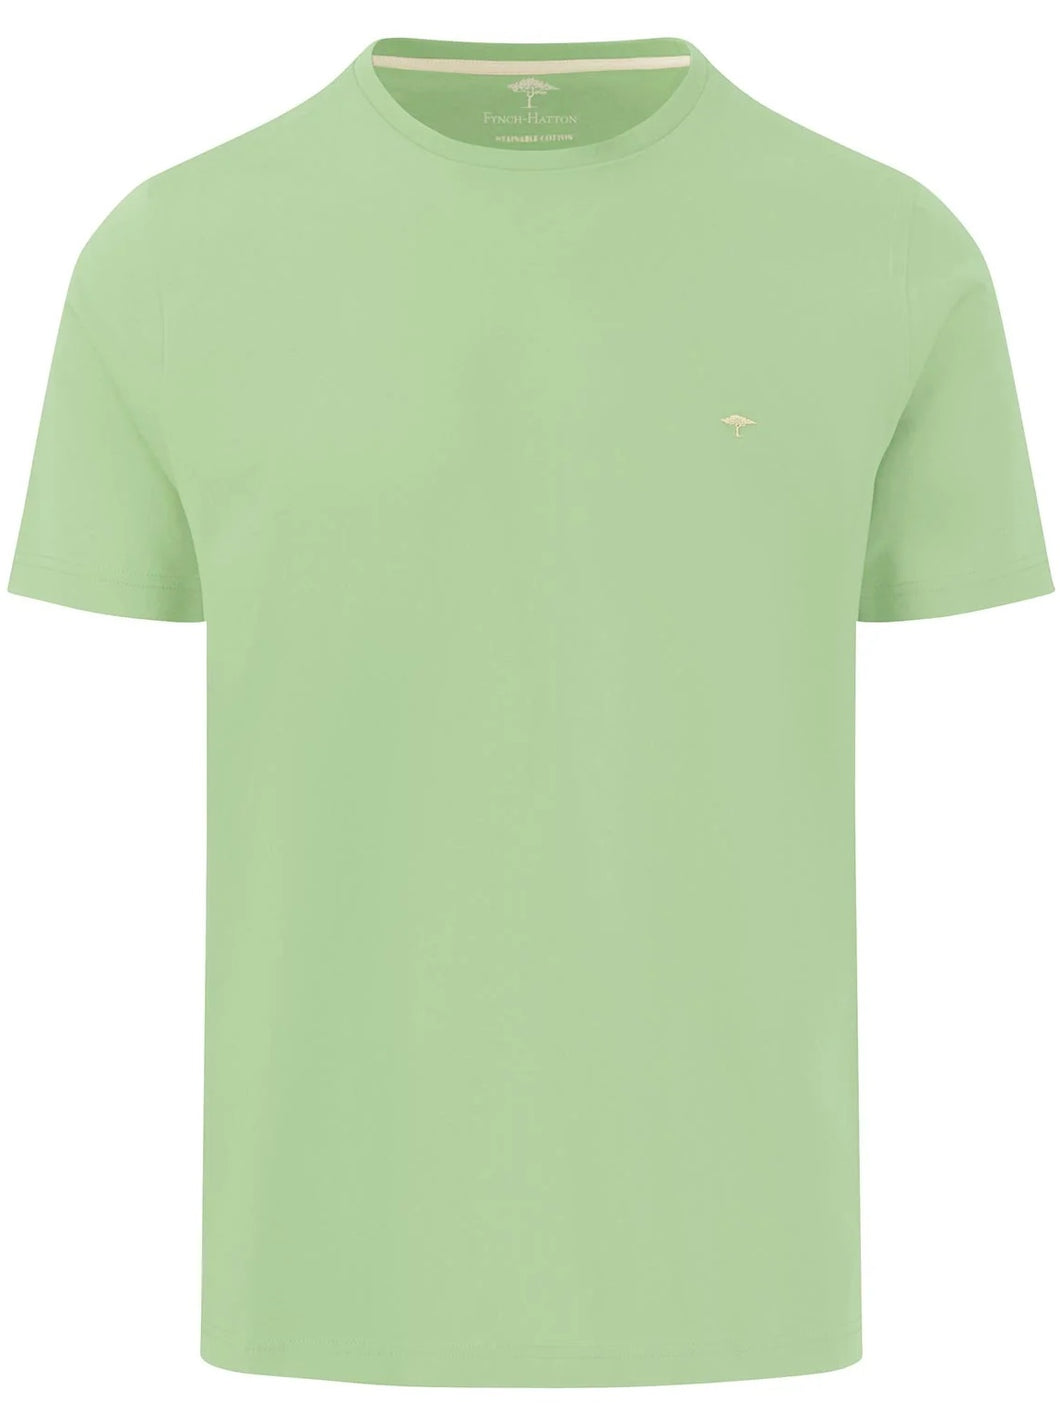 FYNCH HATTON T-Shirt - Men's Round Neck – Soft Green